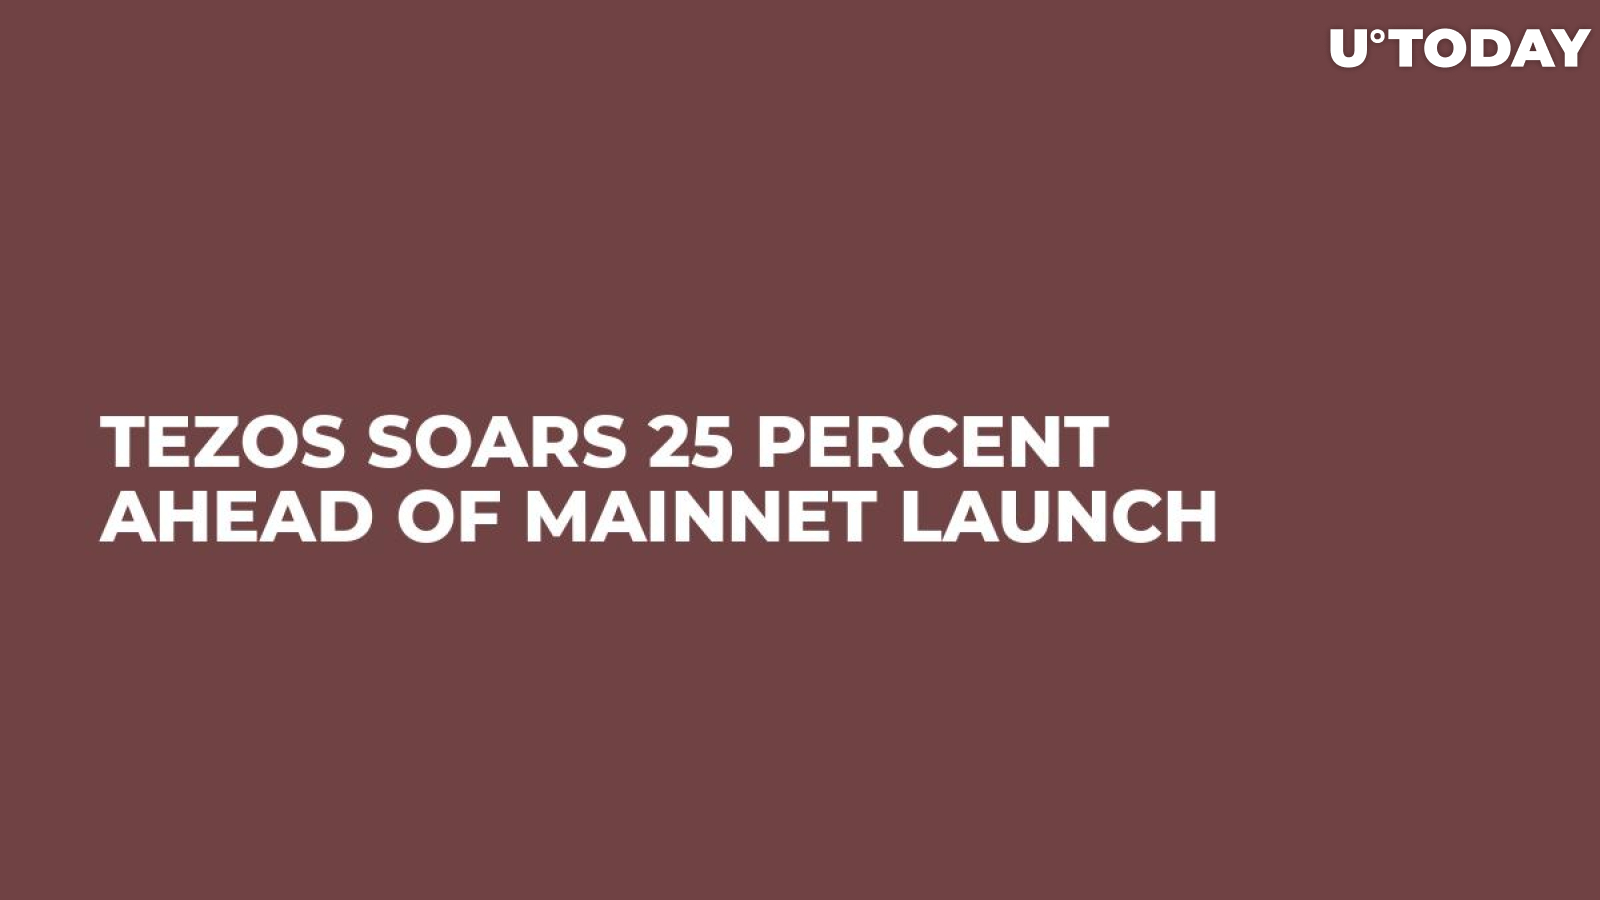 Tezos Soars 25 Percent Ahead of Mainnet Launch